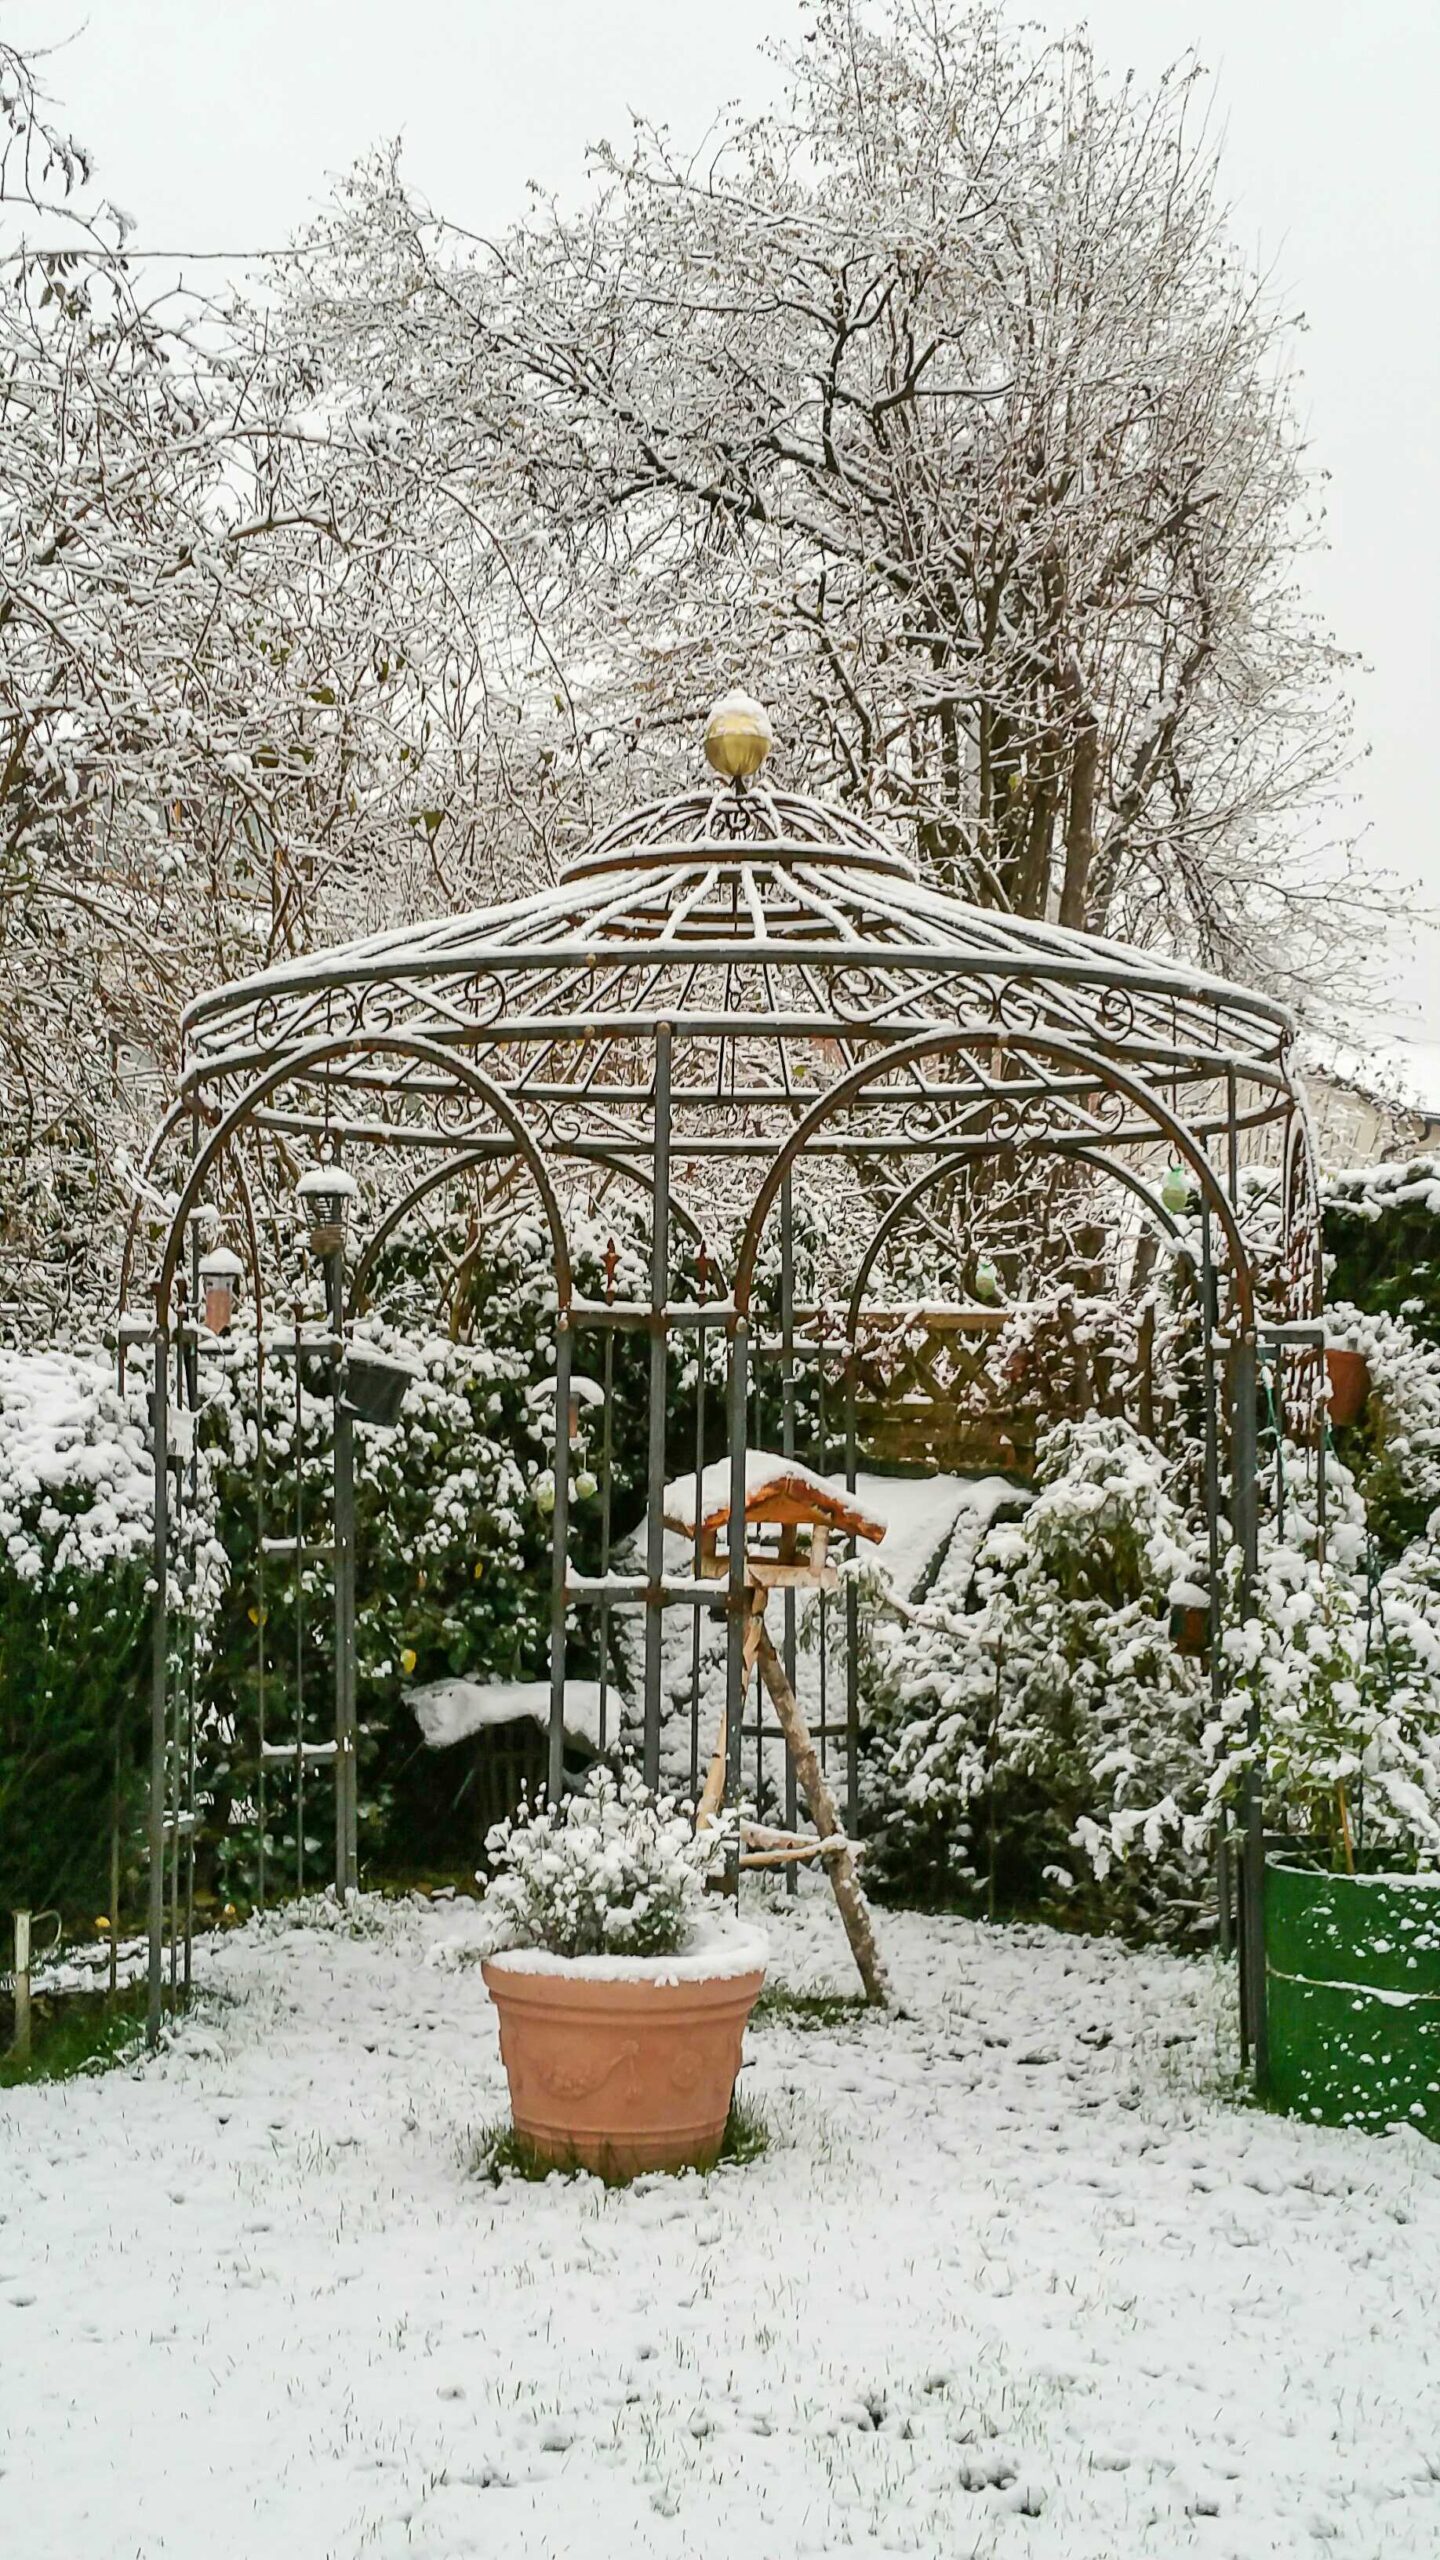 Pavillon Milano unbeschichtet mit Messingkugel in einem Garten